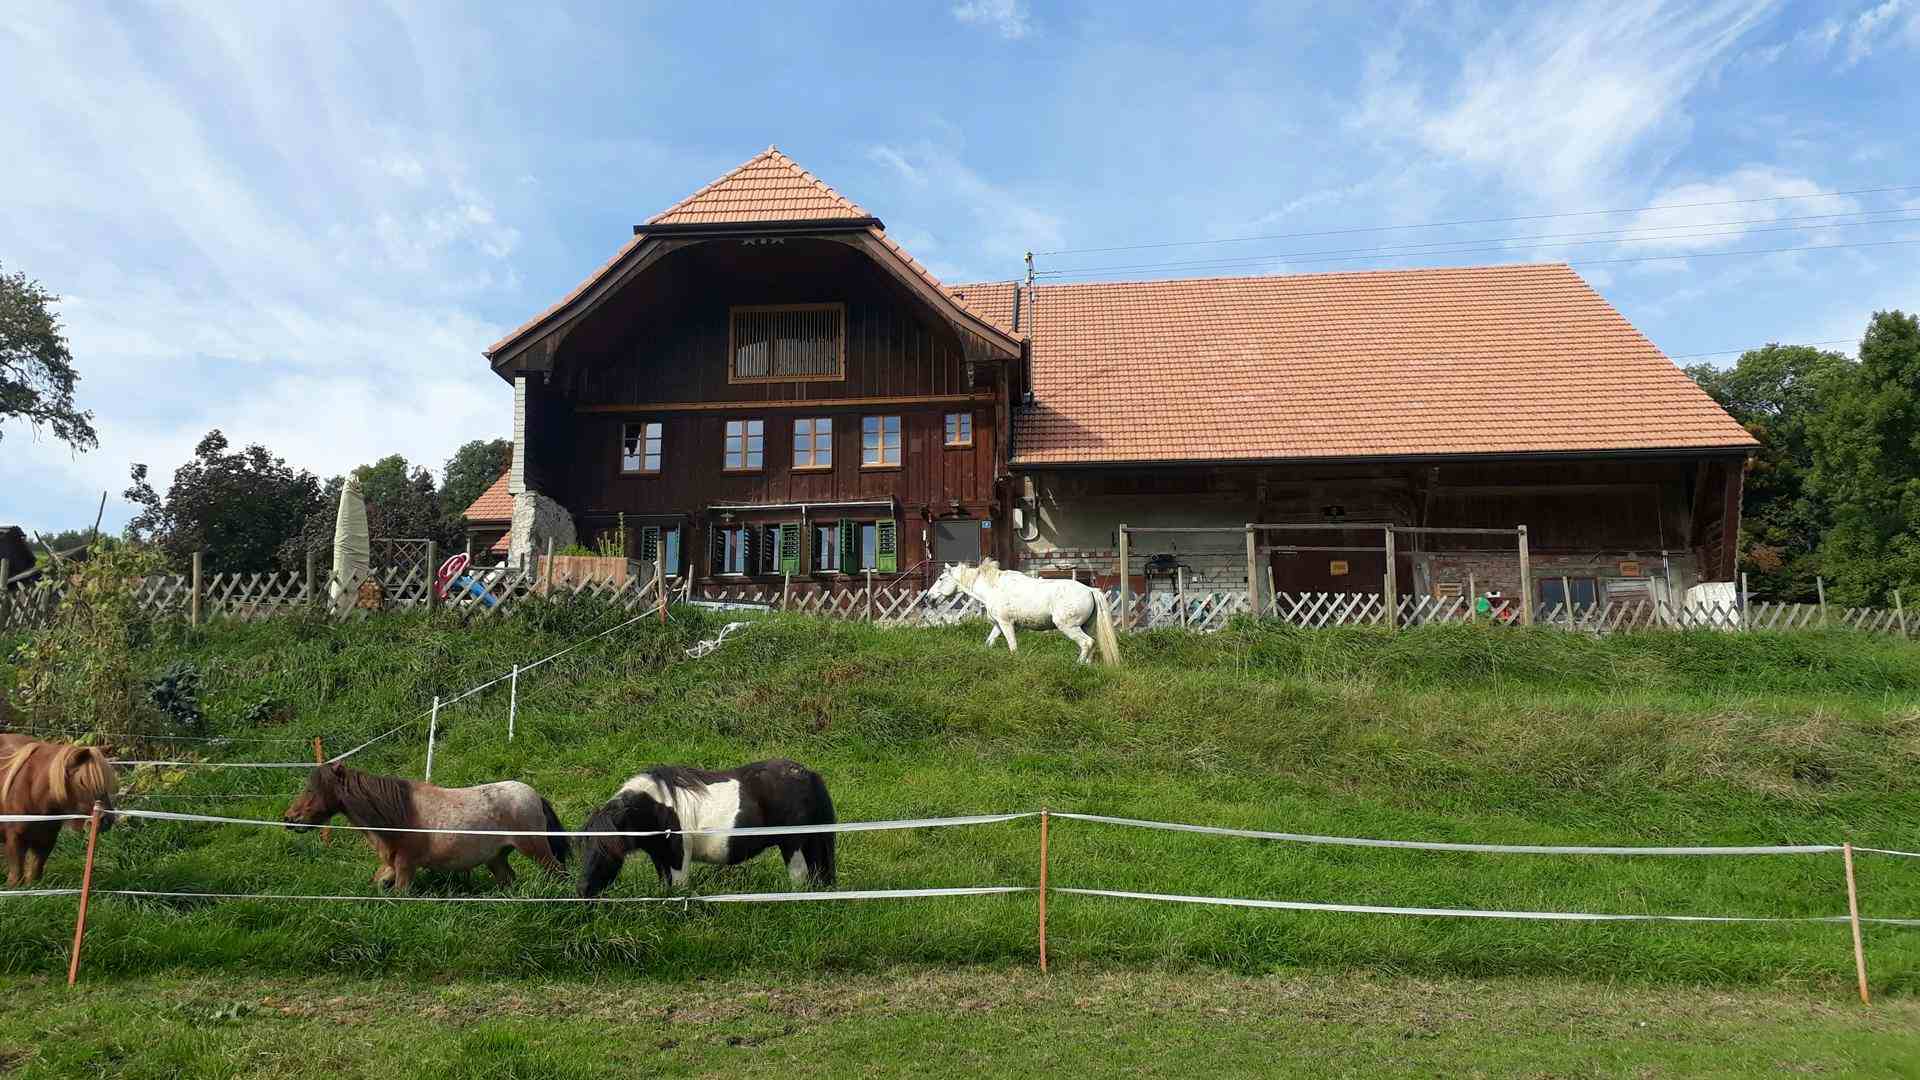 Hostatt , producer in Stans canton of Nidwalden in Switzerland